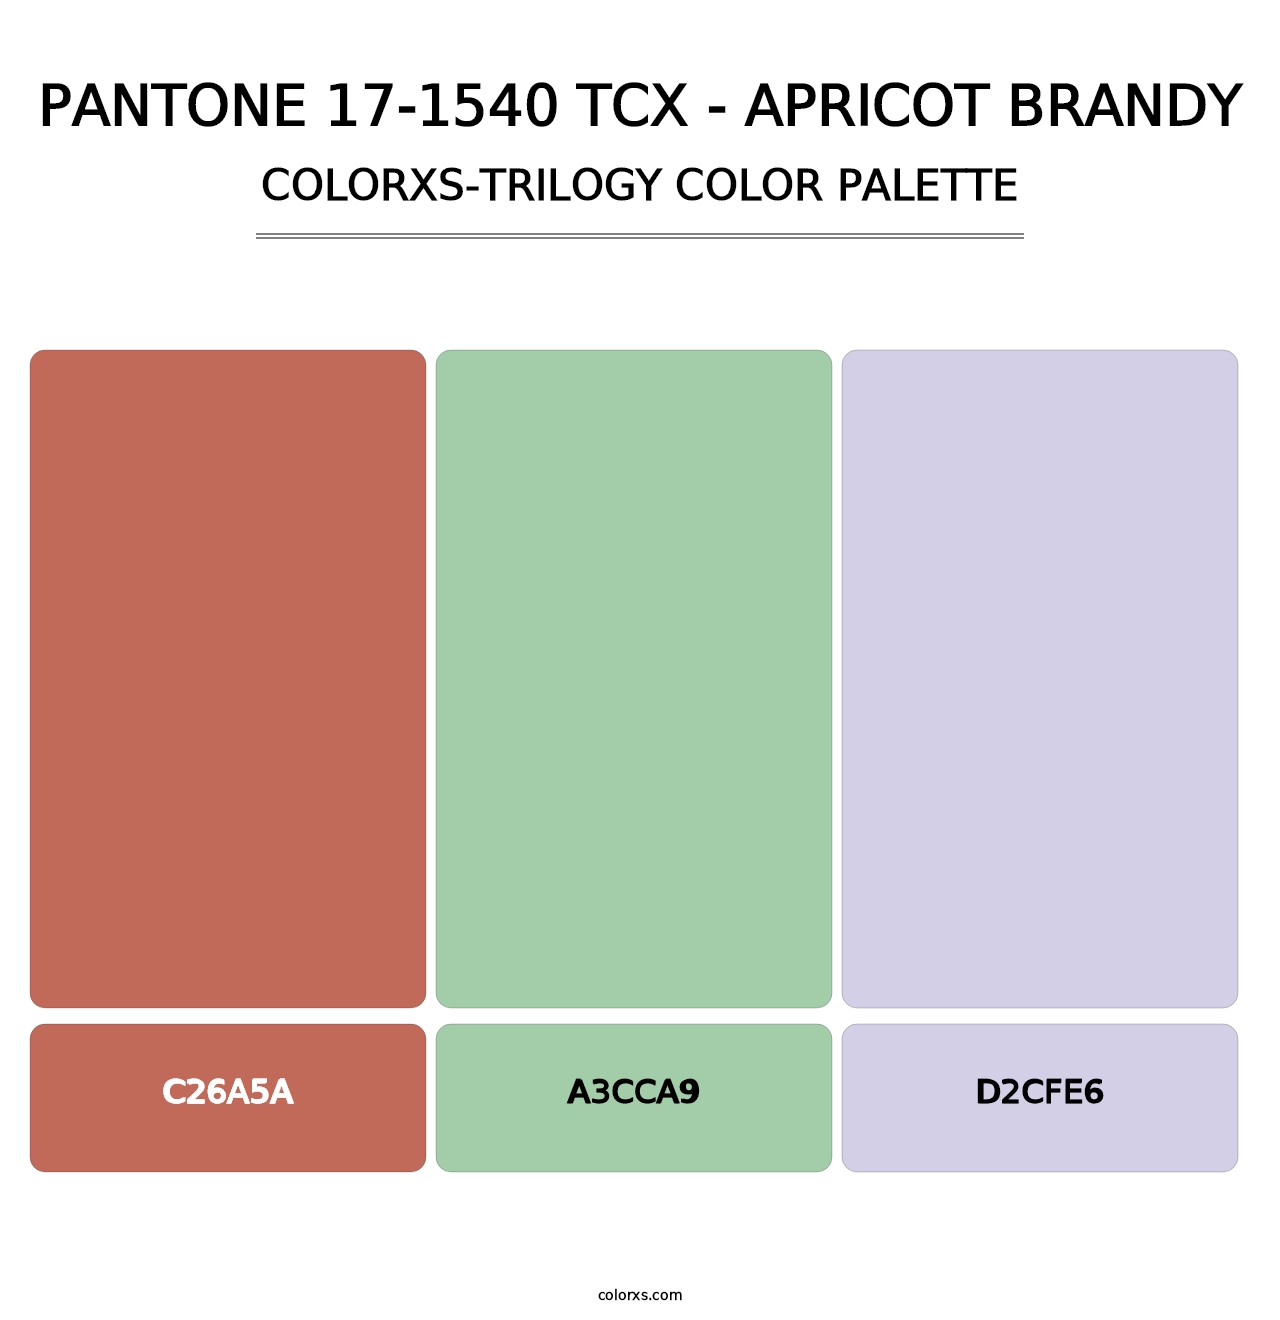 PANTONE 17-1540 TCX - Apricot Brandy - Colorxs Trilogy Palette